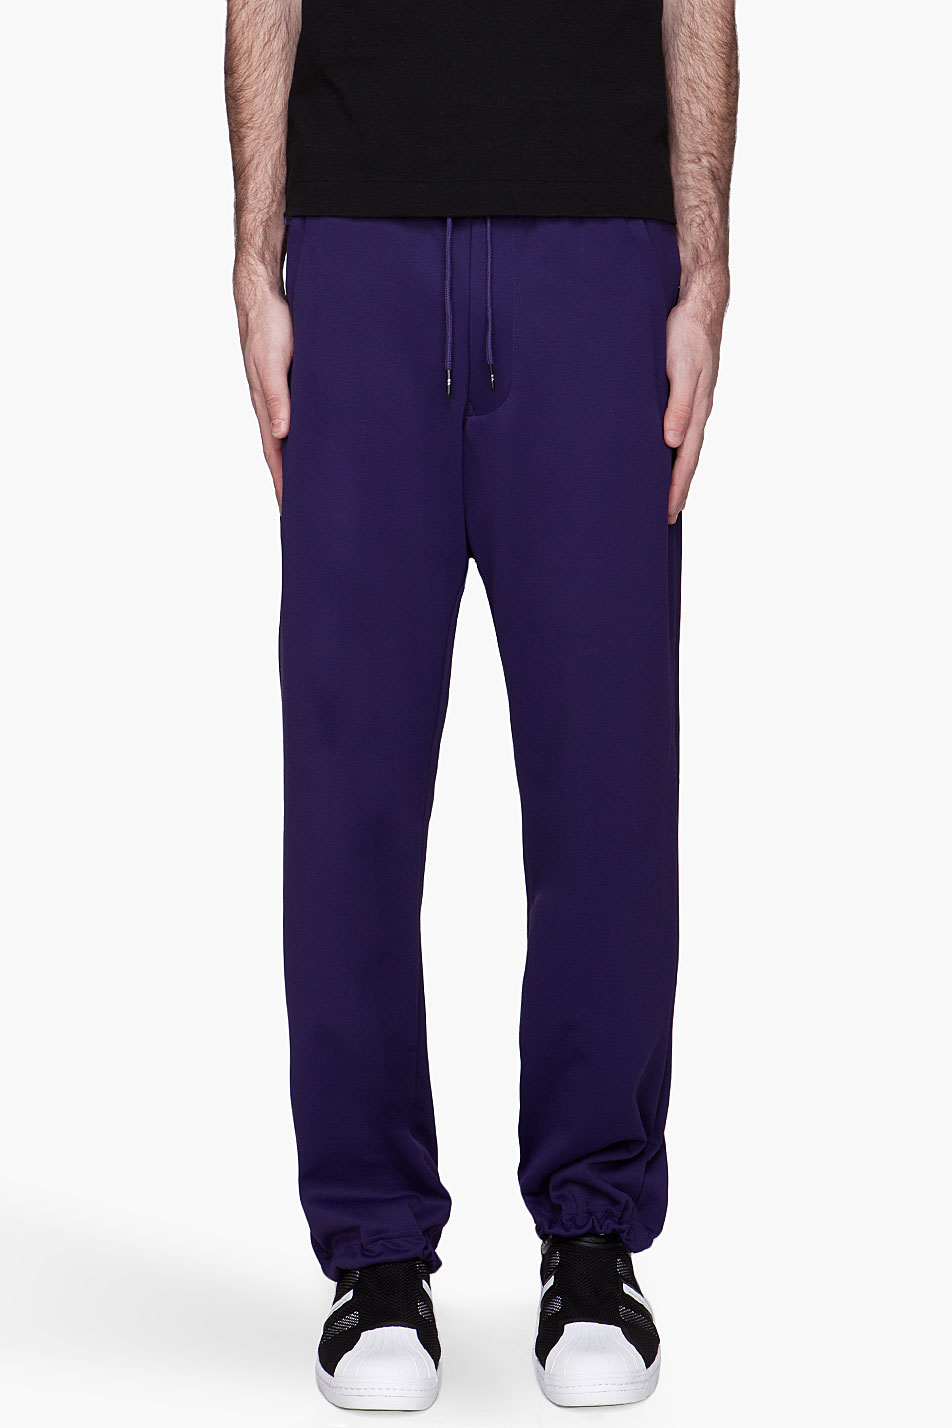 Y-3 Purple Track Pants in Purple for Men | Lyst